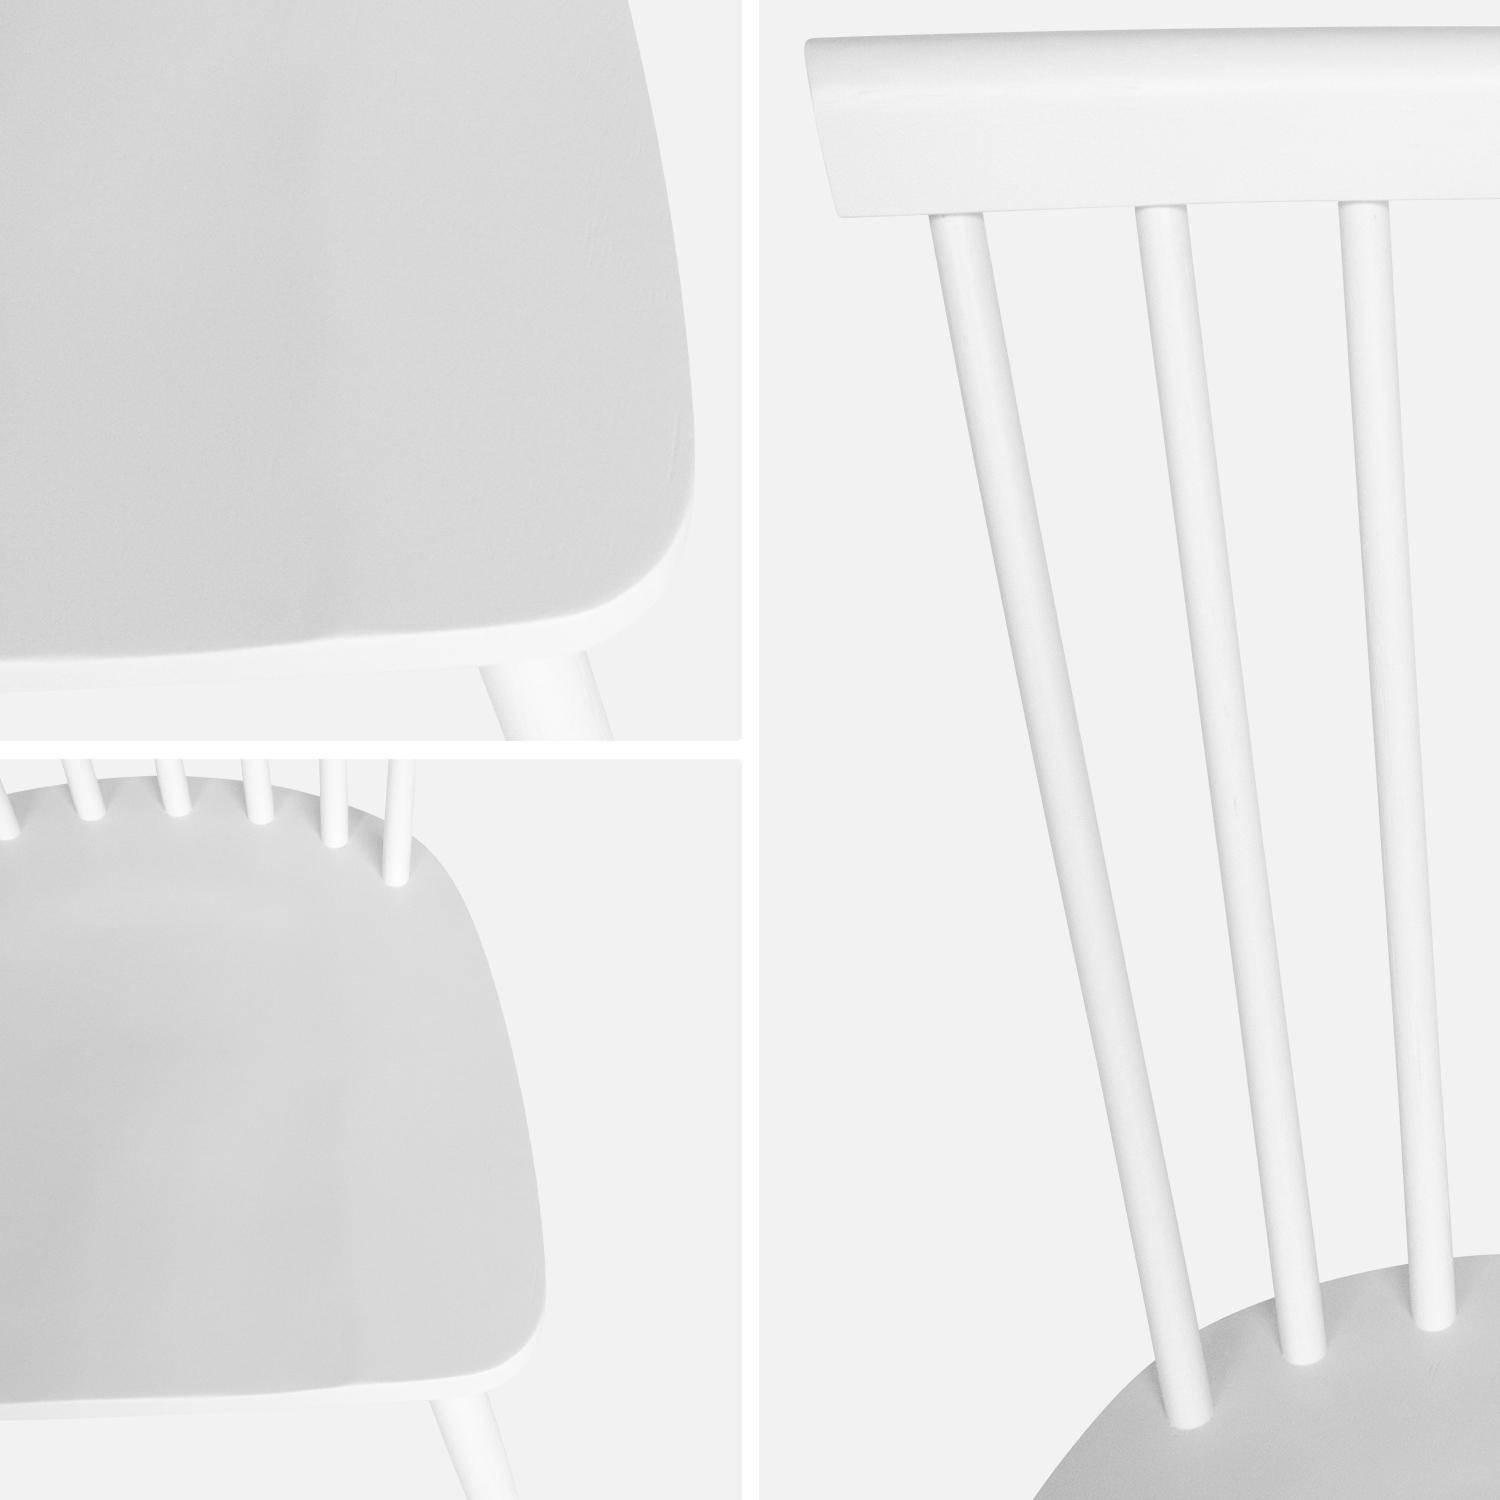 Set di 2 sedie da bar in legno di gomma bianco, ROMIE, L 50,8 x P 44,2 x H 90 cm. Consegna gratuita, garanzia di 2 anni, miglior prezzo garantito! Photo6